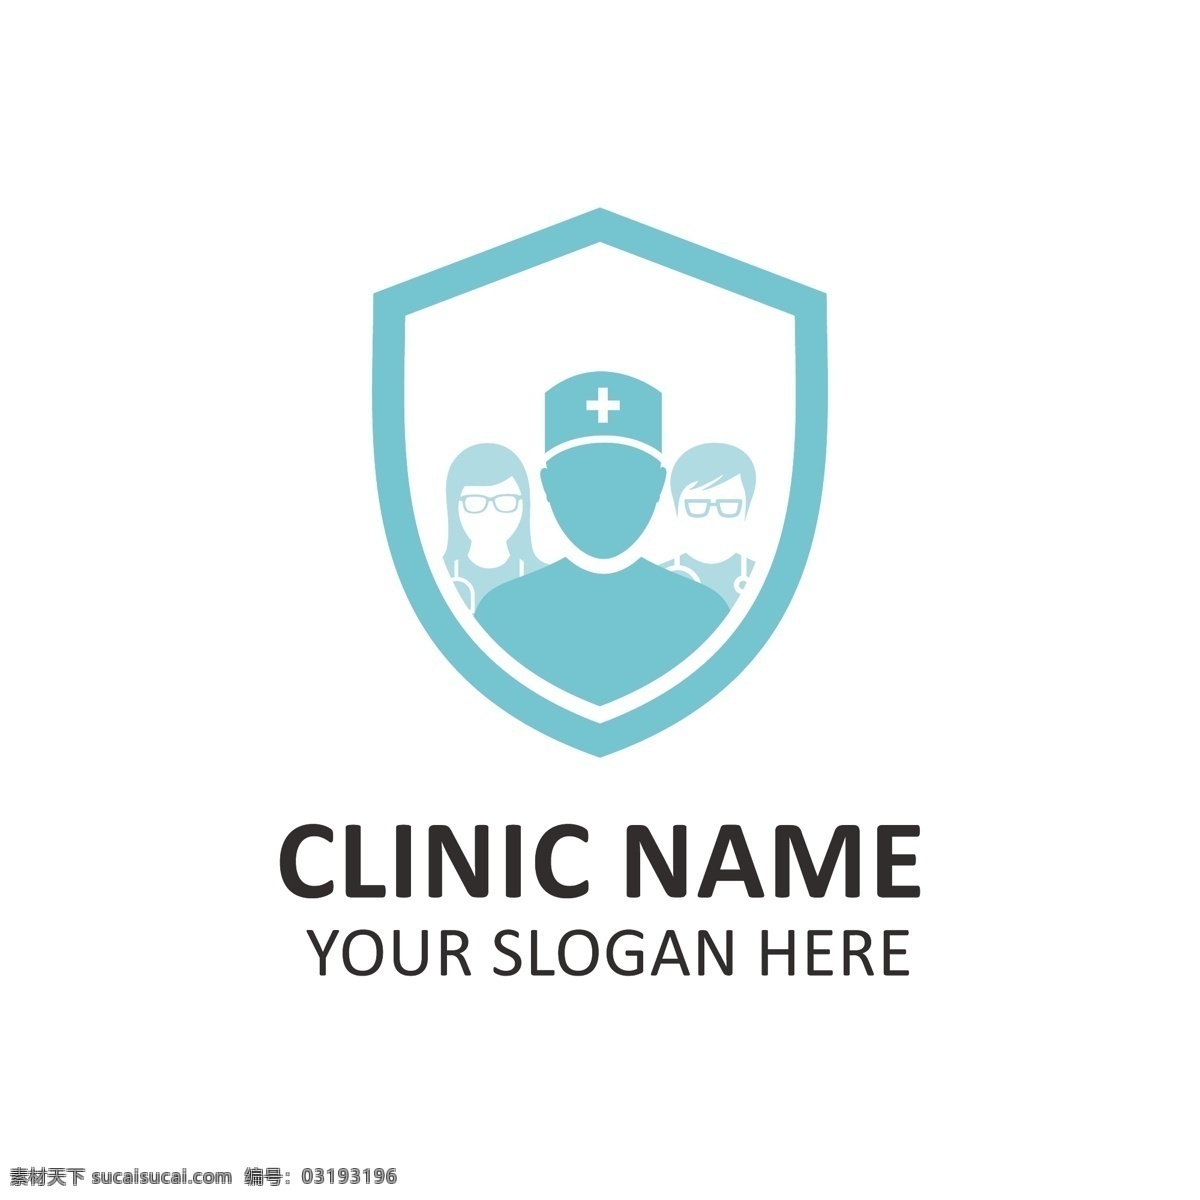 蓝色 医院 标志 模板 标识 医疗 健康 交叉 企业 医药 制药 企业身份 身份 诊所 标志模板 口号 白色